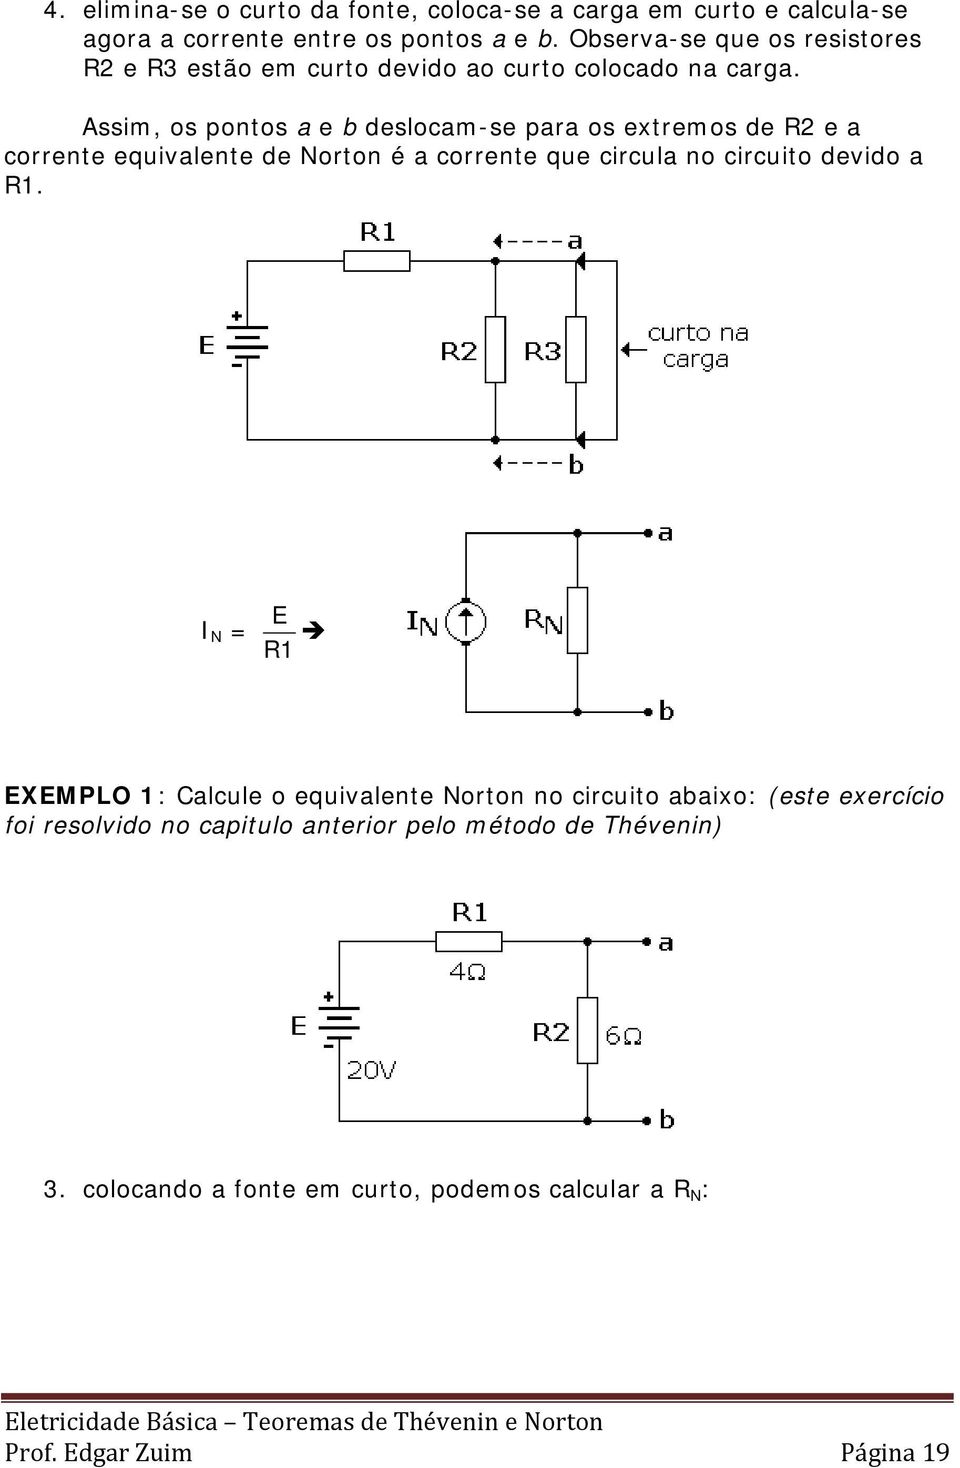 Assim, os pontos a e b deslocam-se para os extremos de R2 e a corrente equivalente de Norton é a corrente que circula no circuito devido a R1.